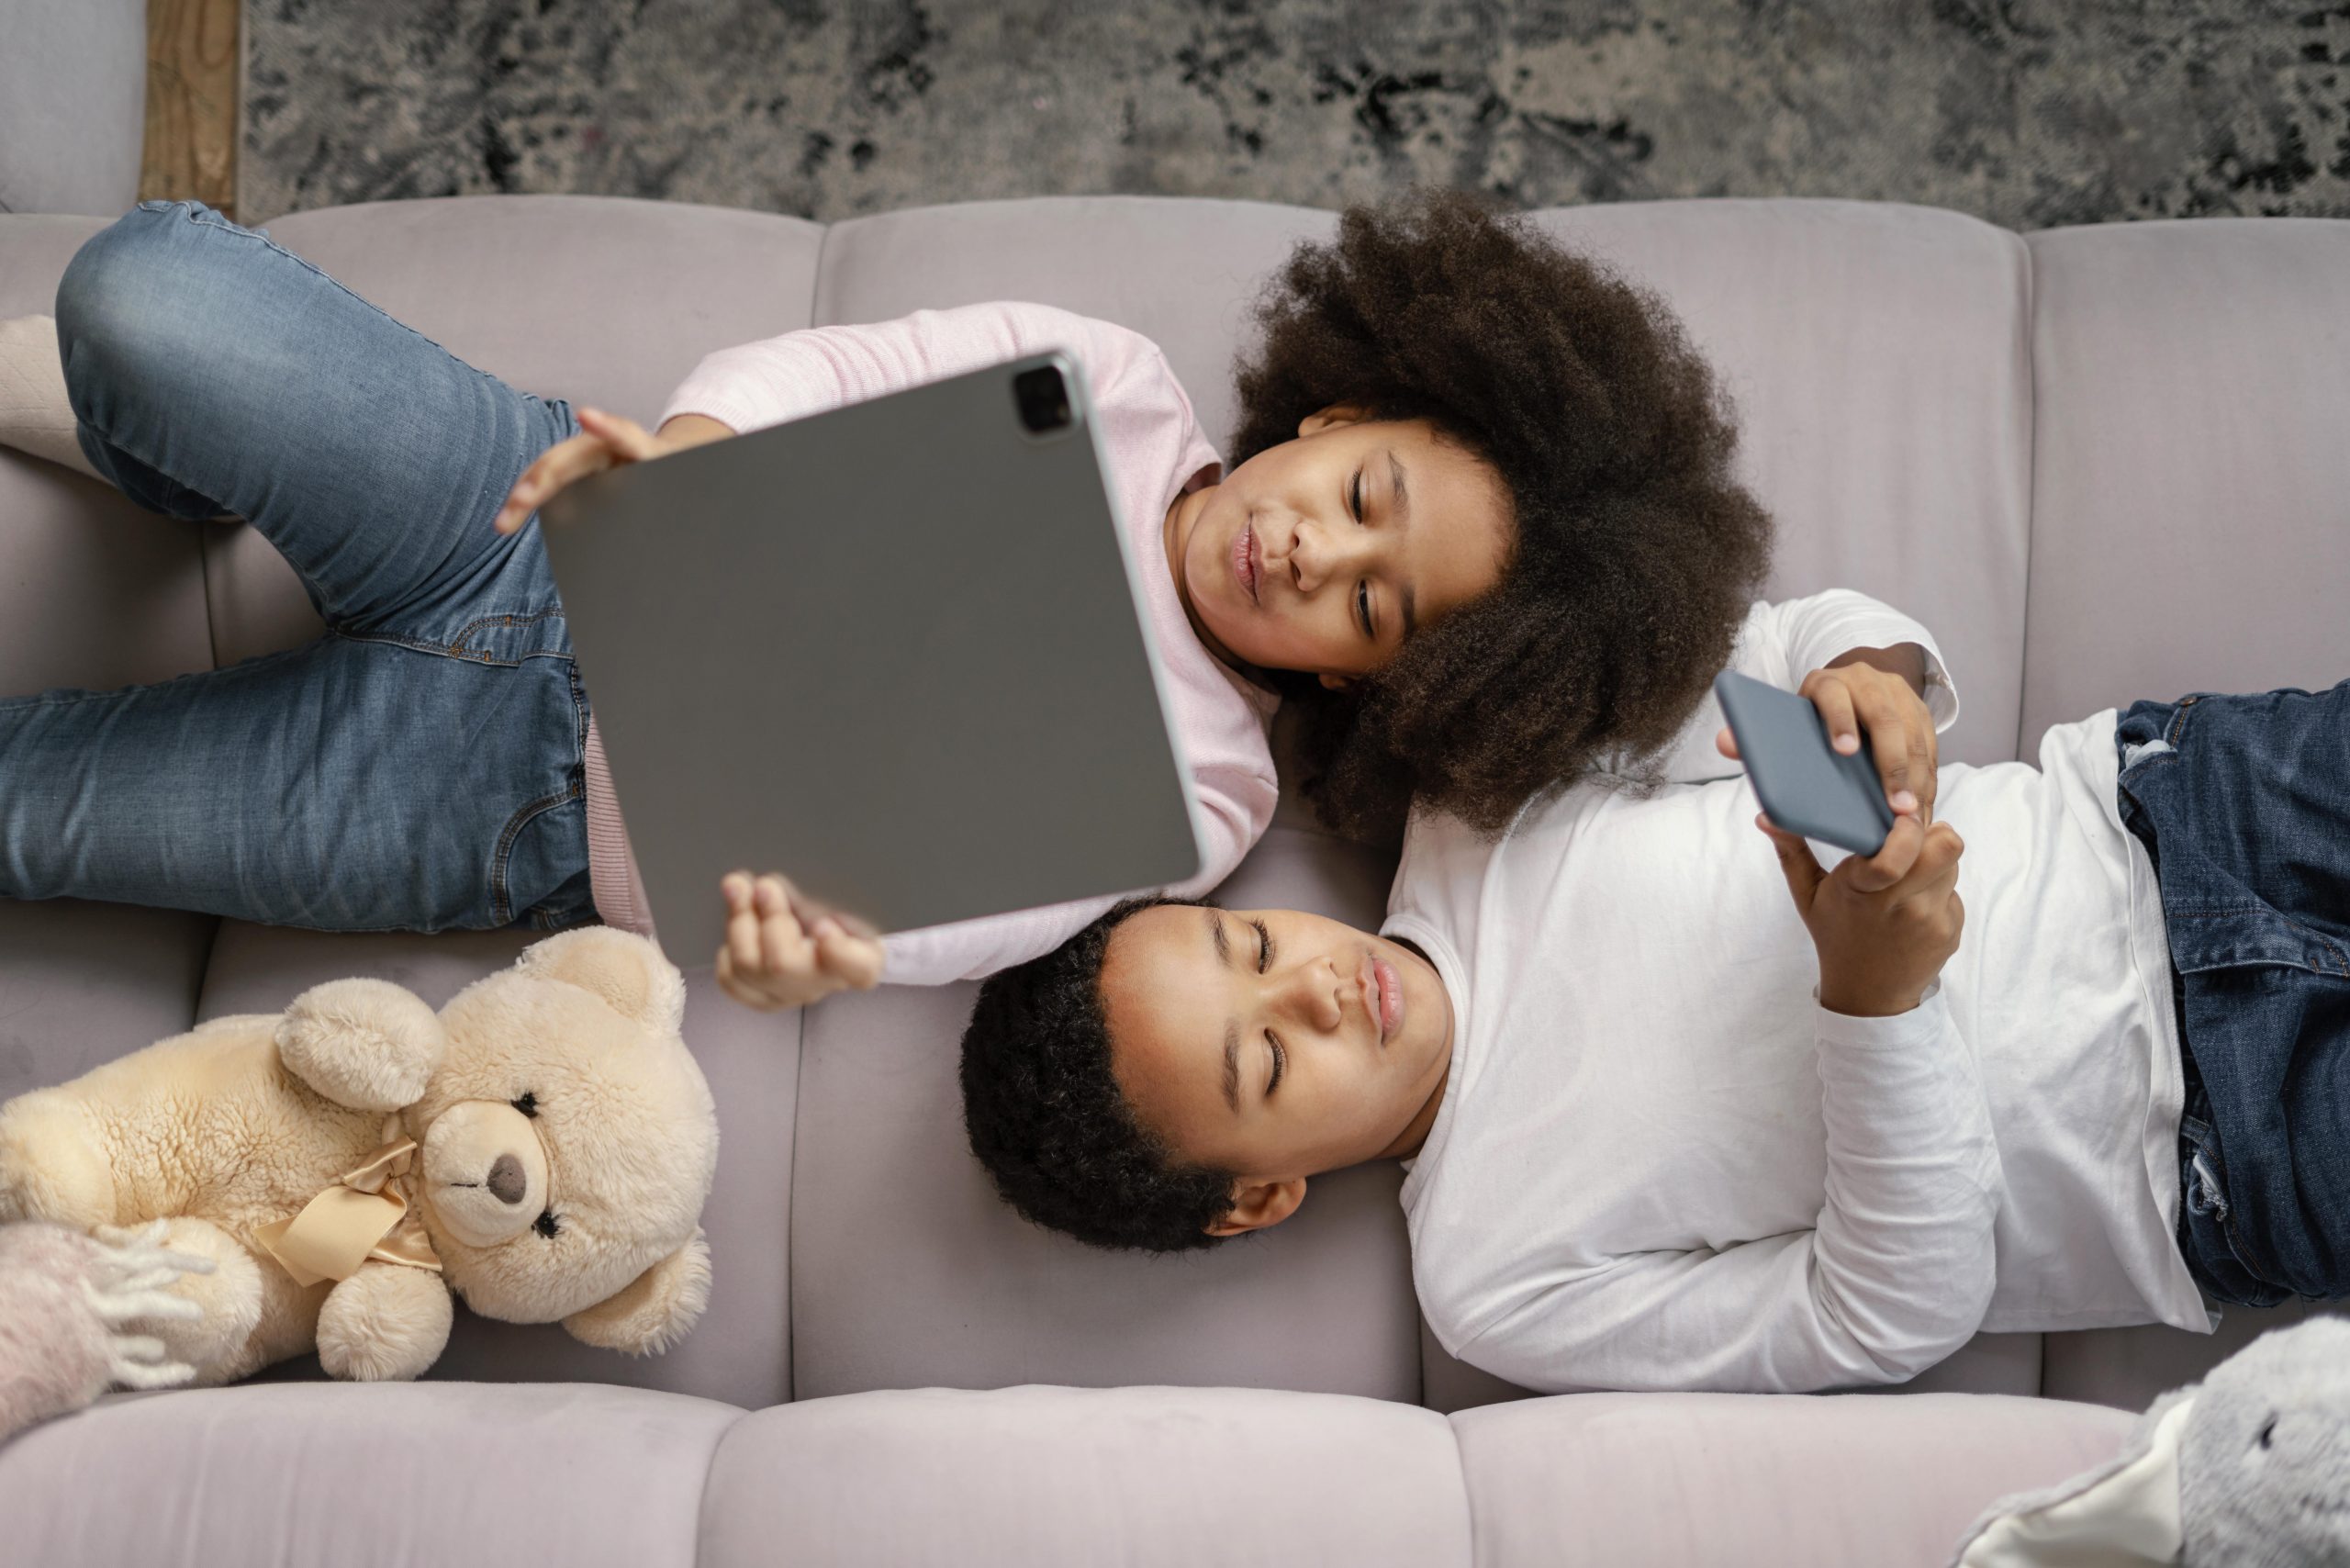 Cartilha da Anatel orienta pais sobre uso seguro da internet por crianças